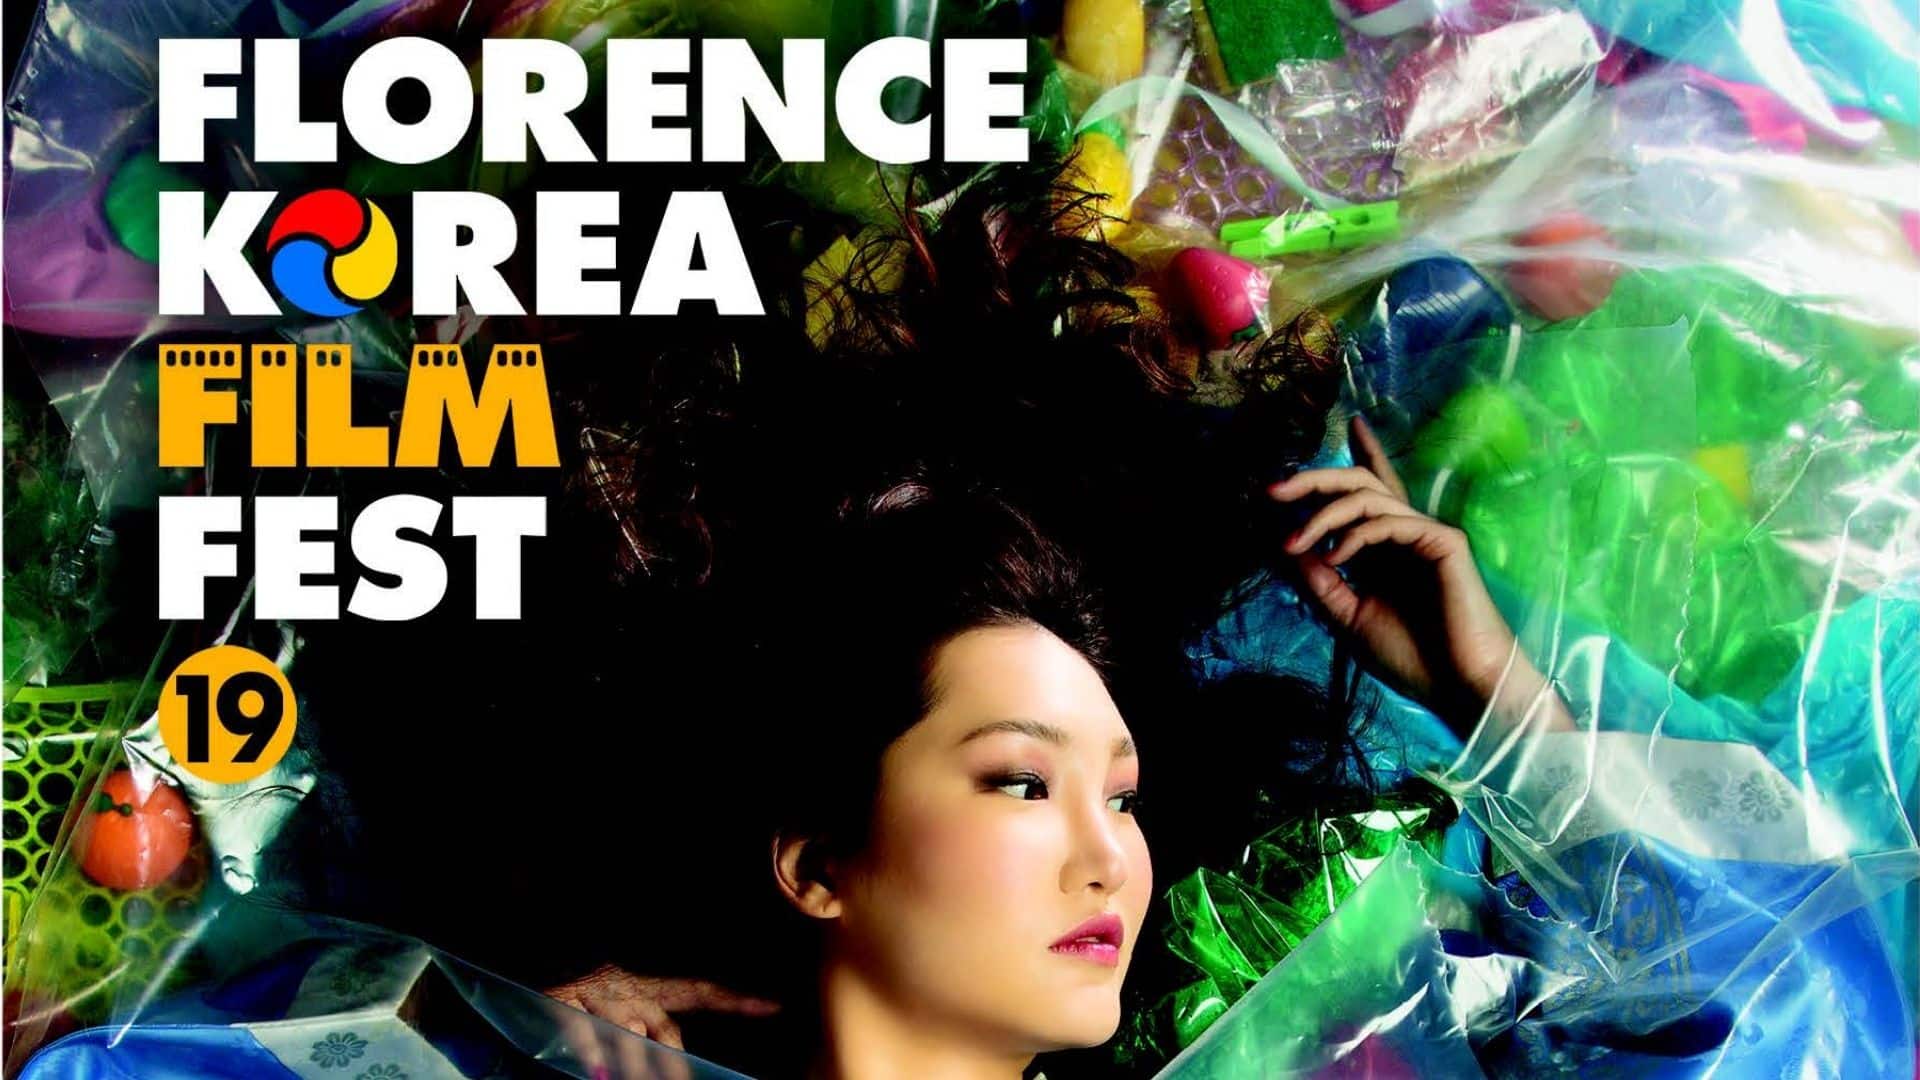 Florence Korea Film Fest arrivato alla 19sima edizione e presenta più di 100 film